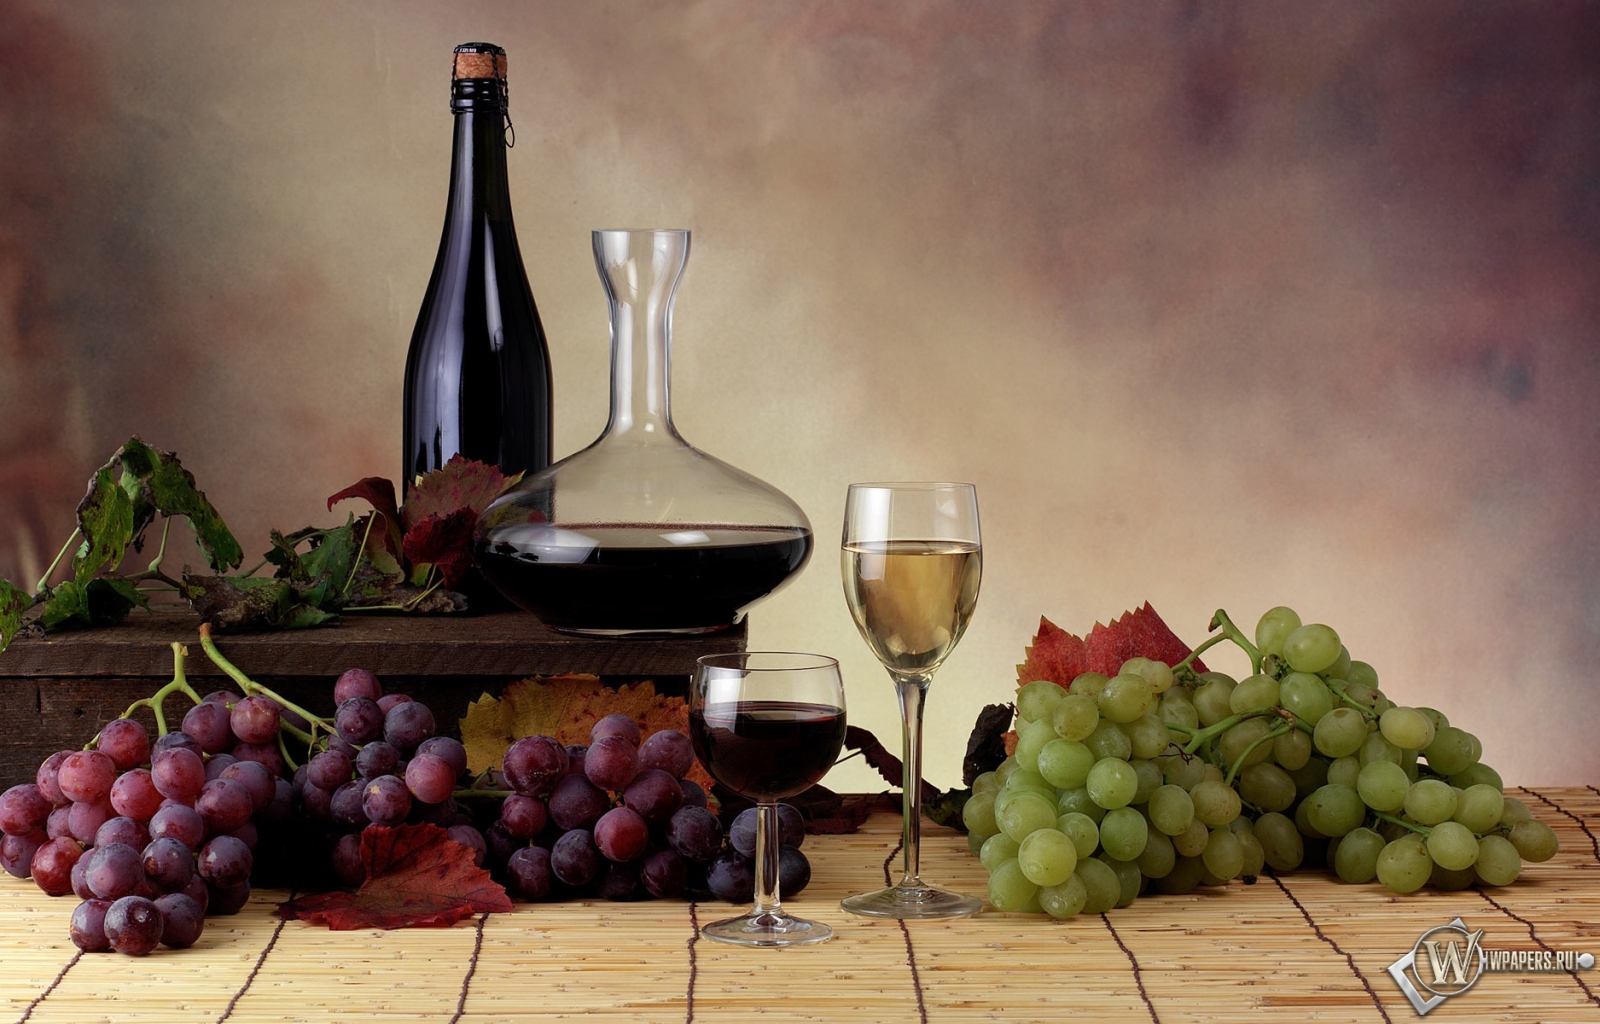 Вино и виноград 1600x1024